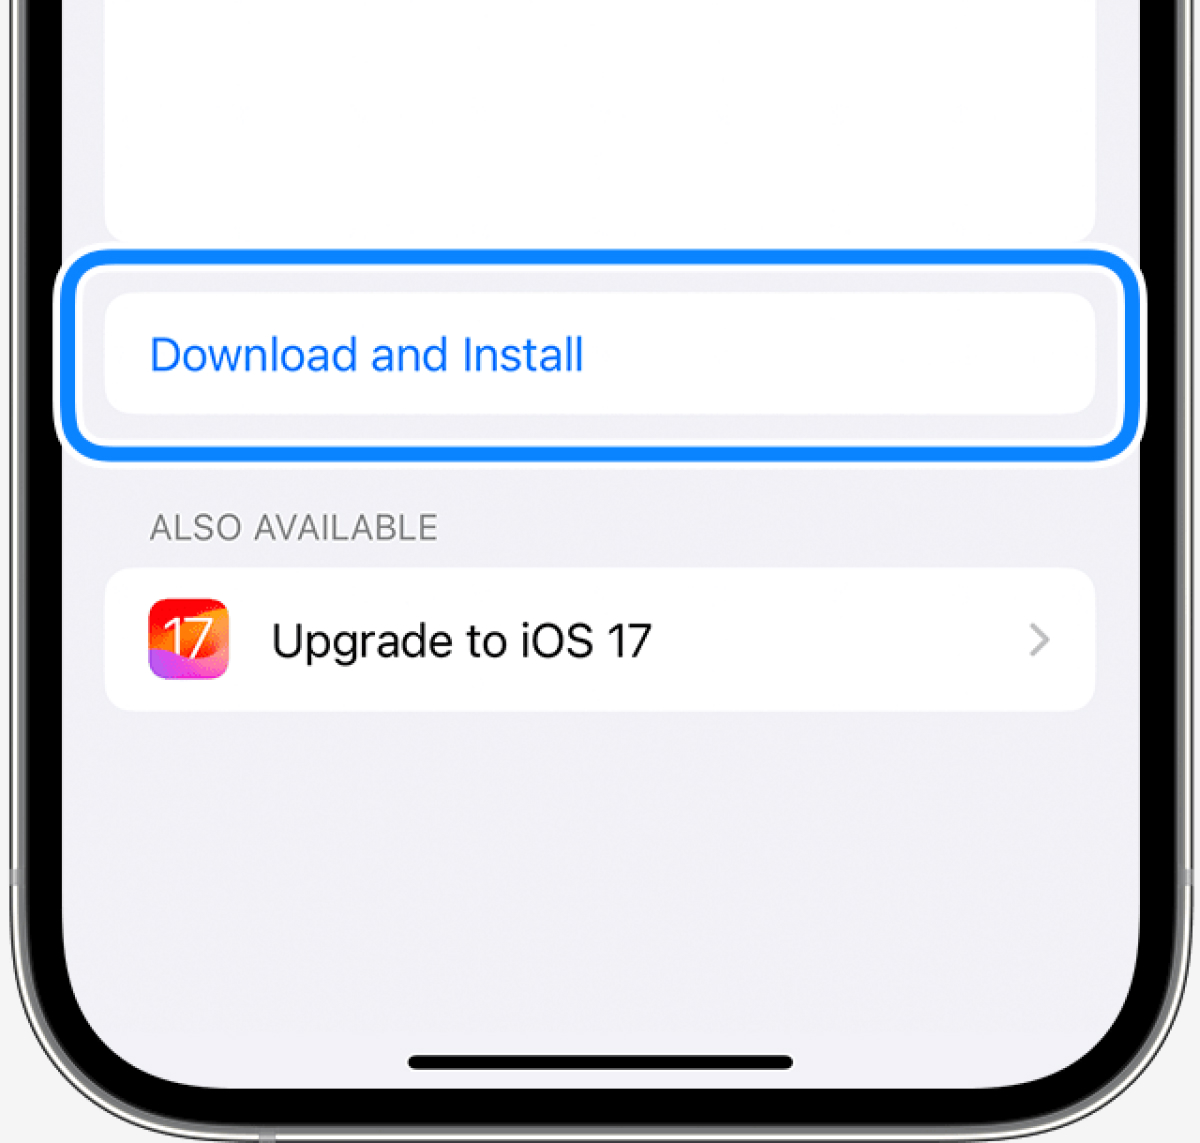 toccare Scarica e installa per aggiornare il sistema iOS per nuove suonerie